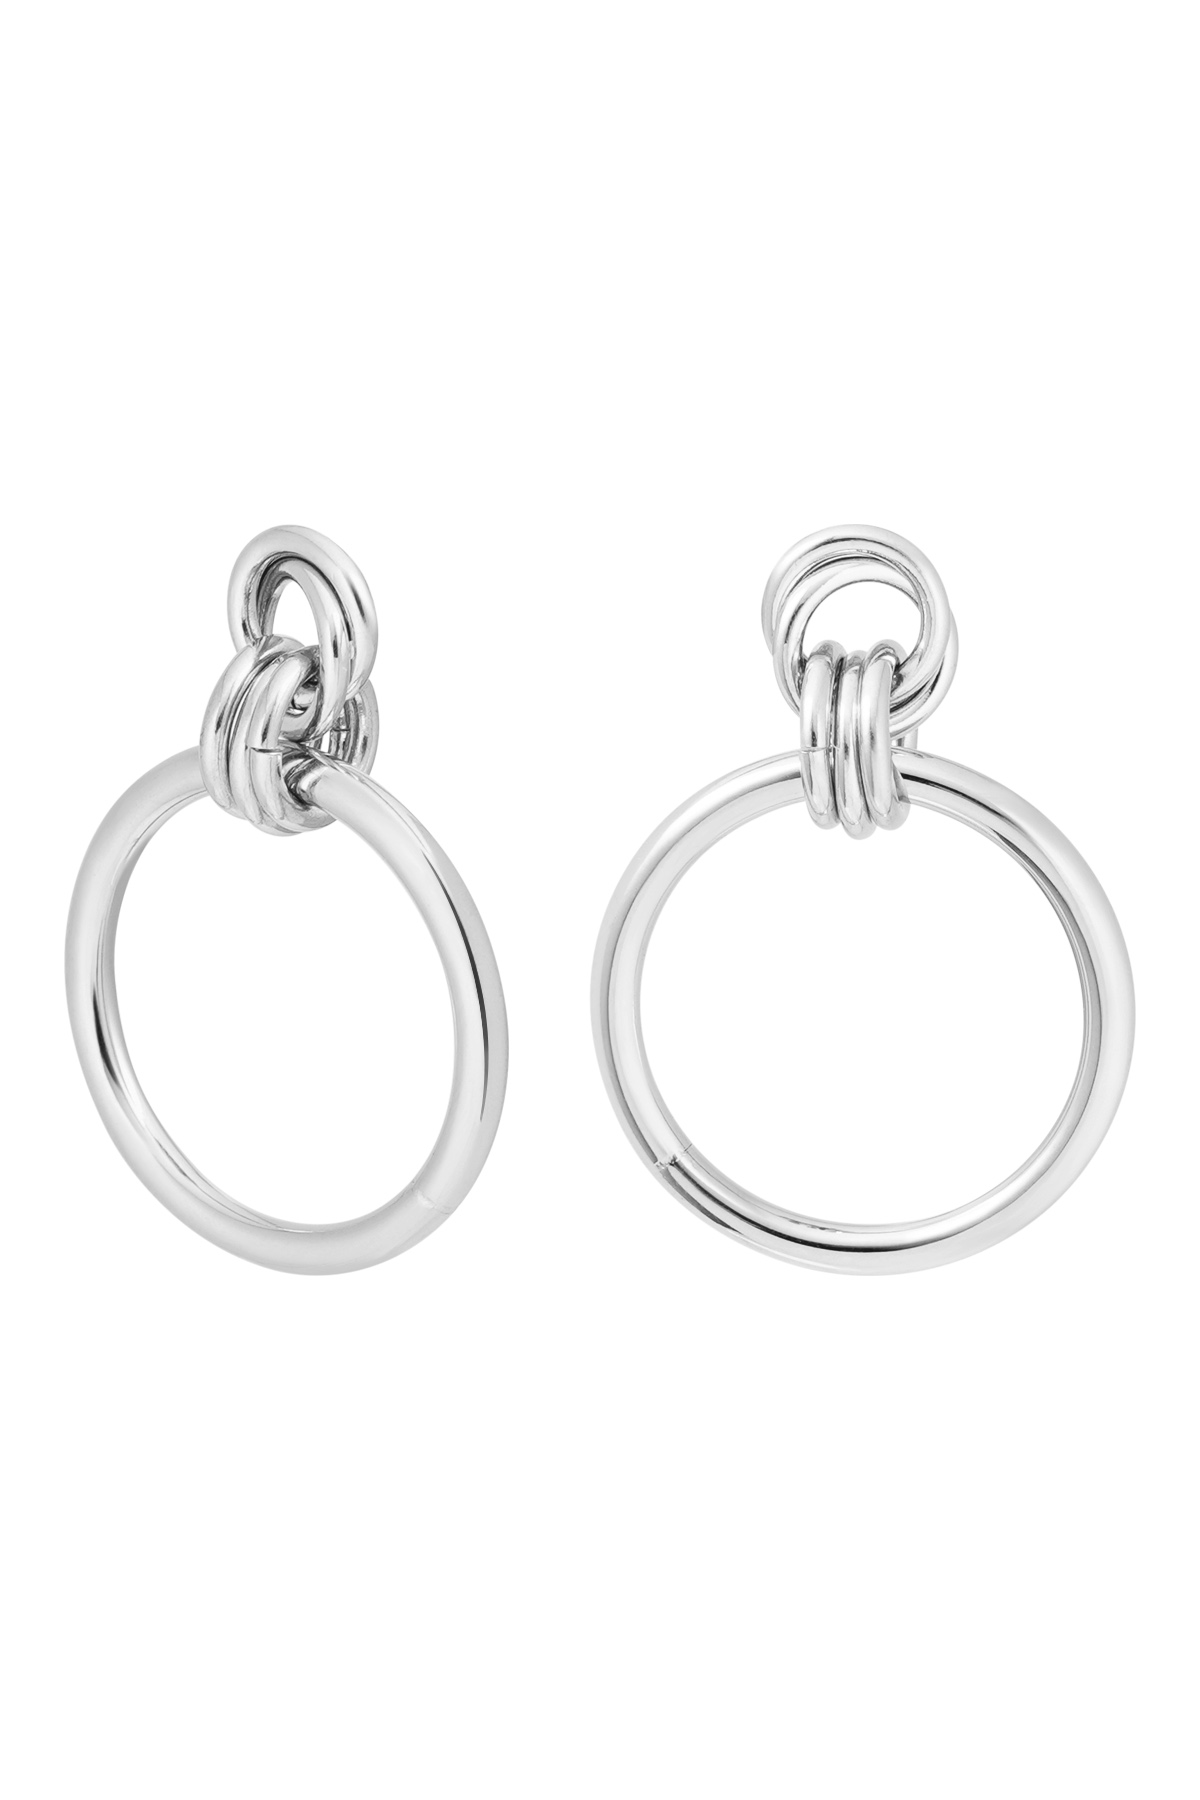 Ohrringe mit verbundenen Kreisen, schlicht – Silber